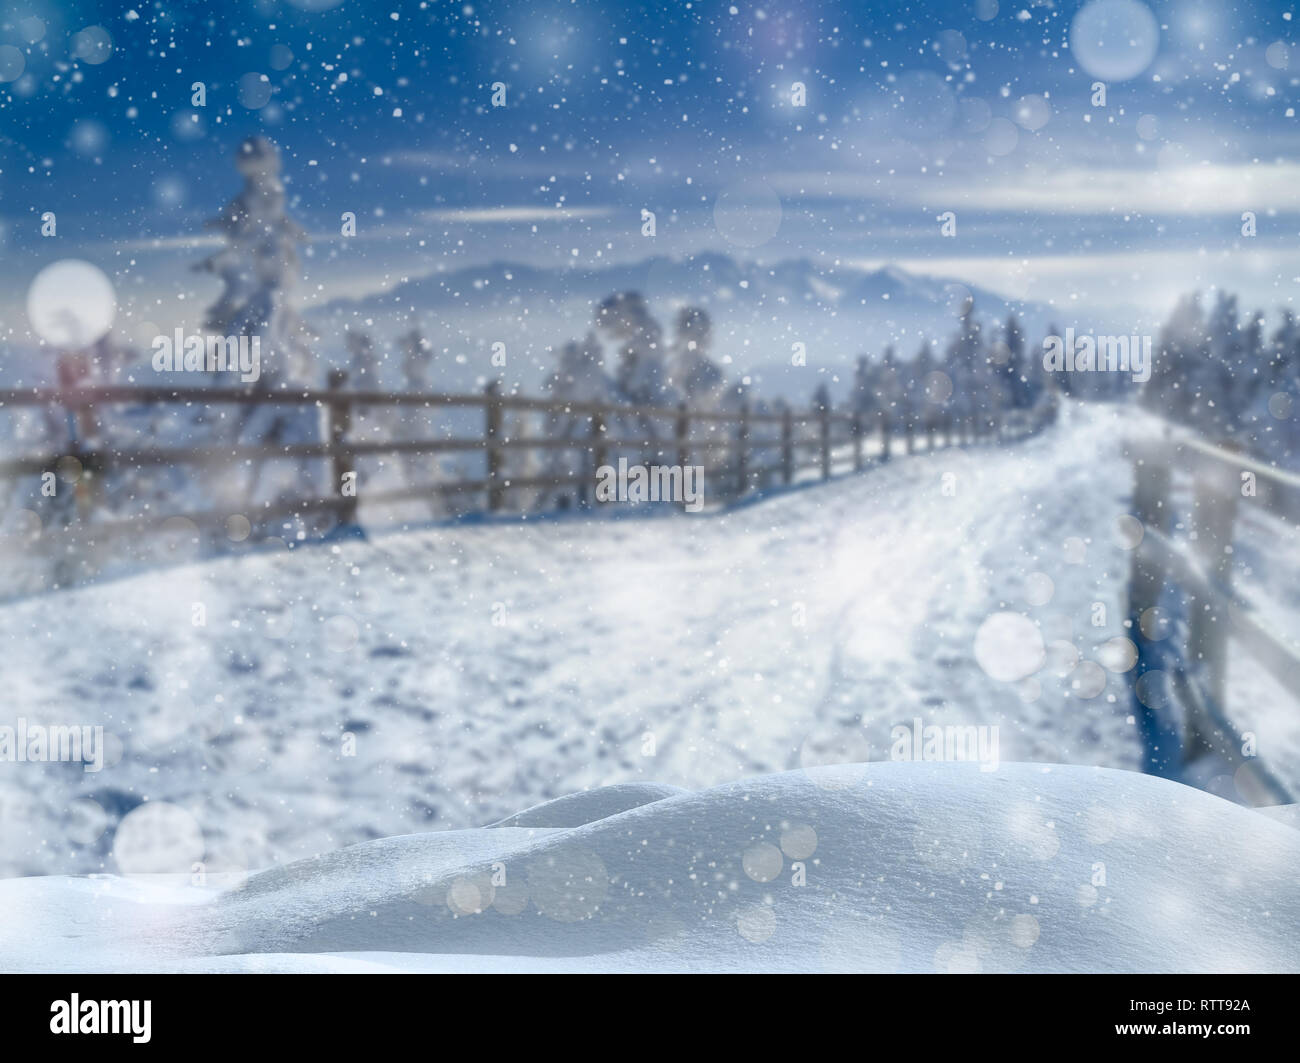 País de las maravillas invernal paisaje. Bokeh nieve con luces tenues cayendo sobre un fondo difuminado escénico de Navidad. Foto de stock